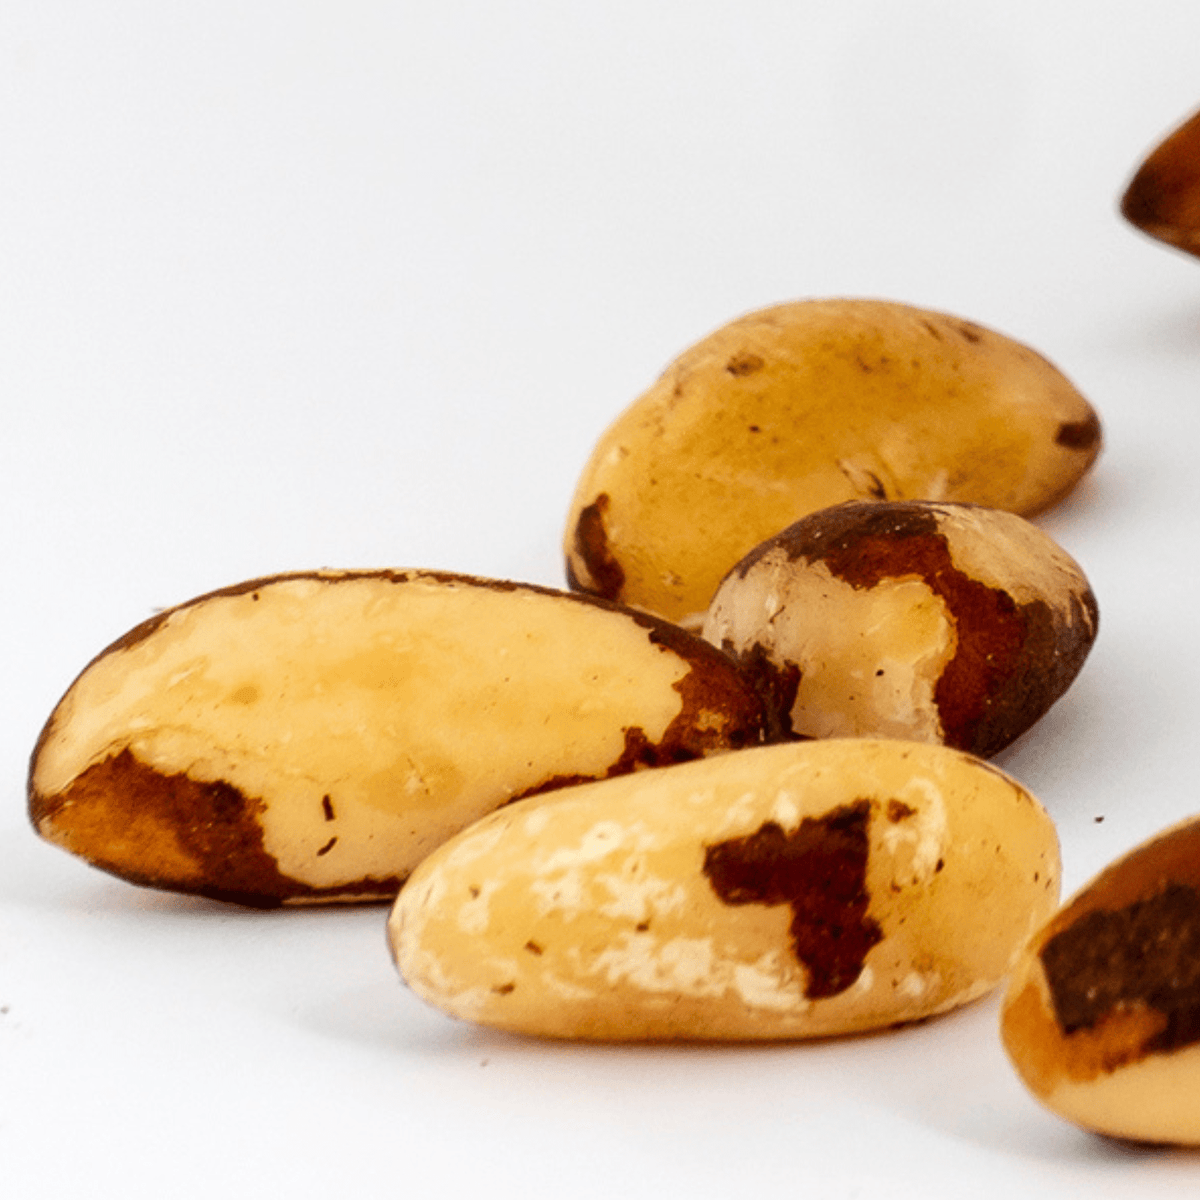 Castanha do Pará 1kg - Natural Nuts